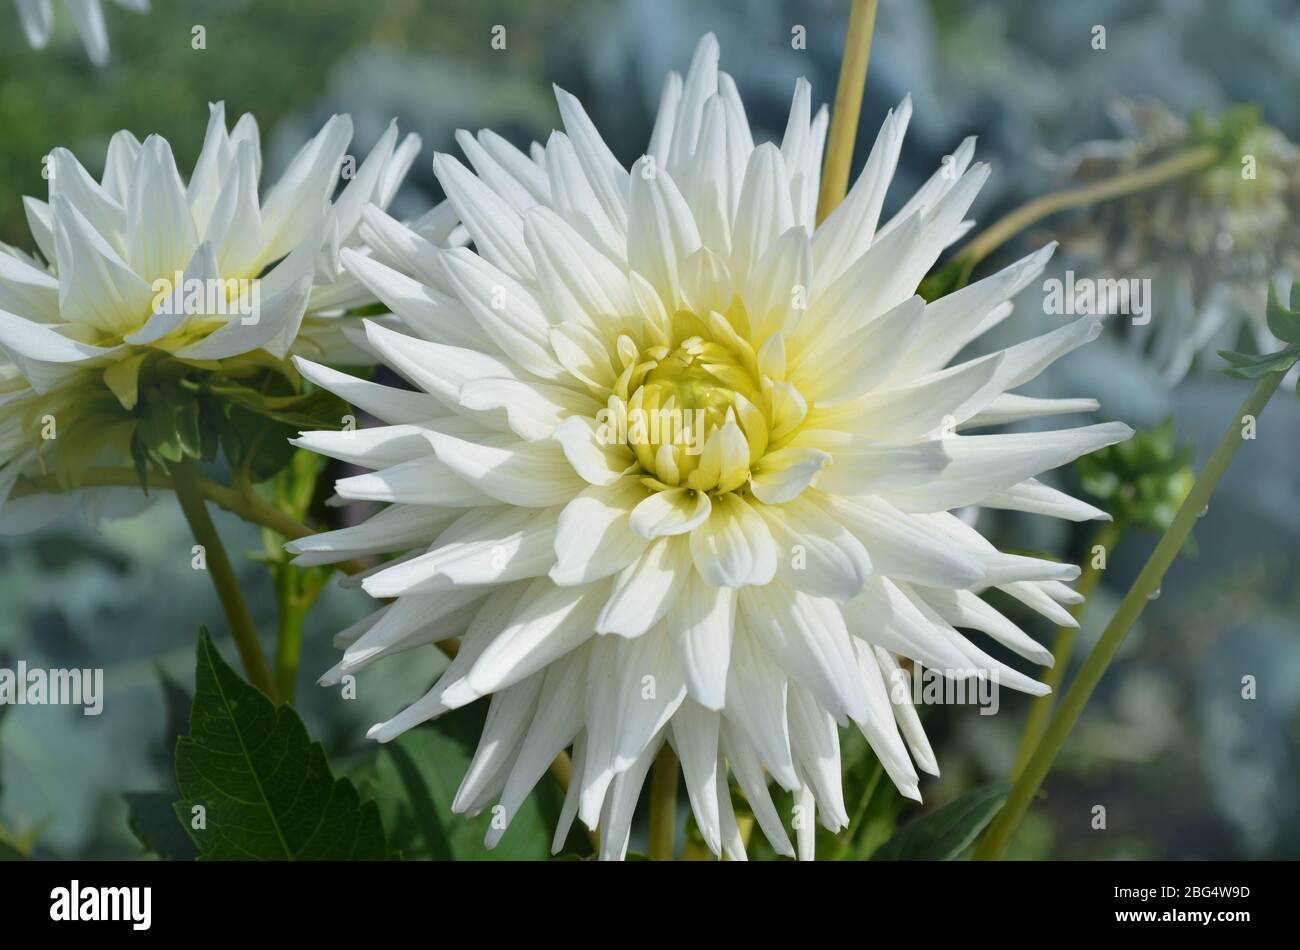 Dahlia with creamy white petals. Dahlia White star. White dahlias in the garden Stock Photo